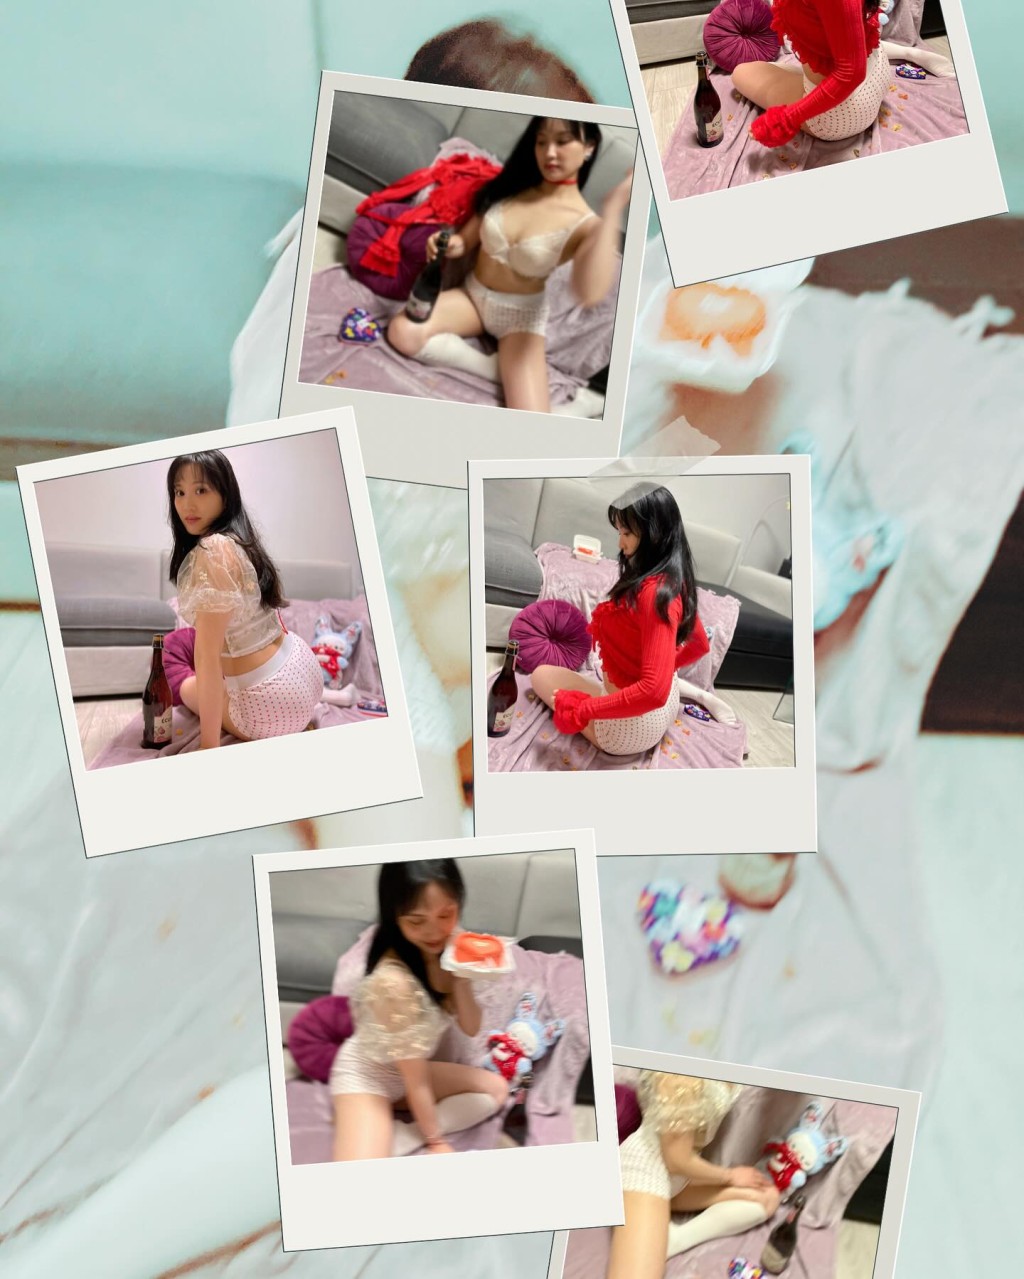 石修新抱林佑蔚曾在初七「人日」时，于IG上载只穿性感内衣拍摄的照片来为大家庆生。